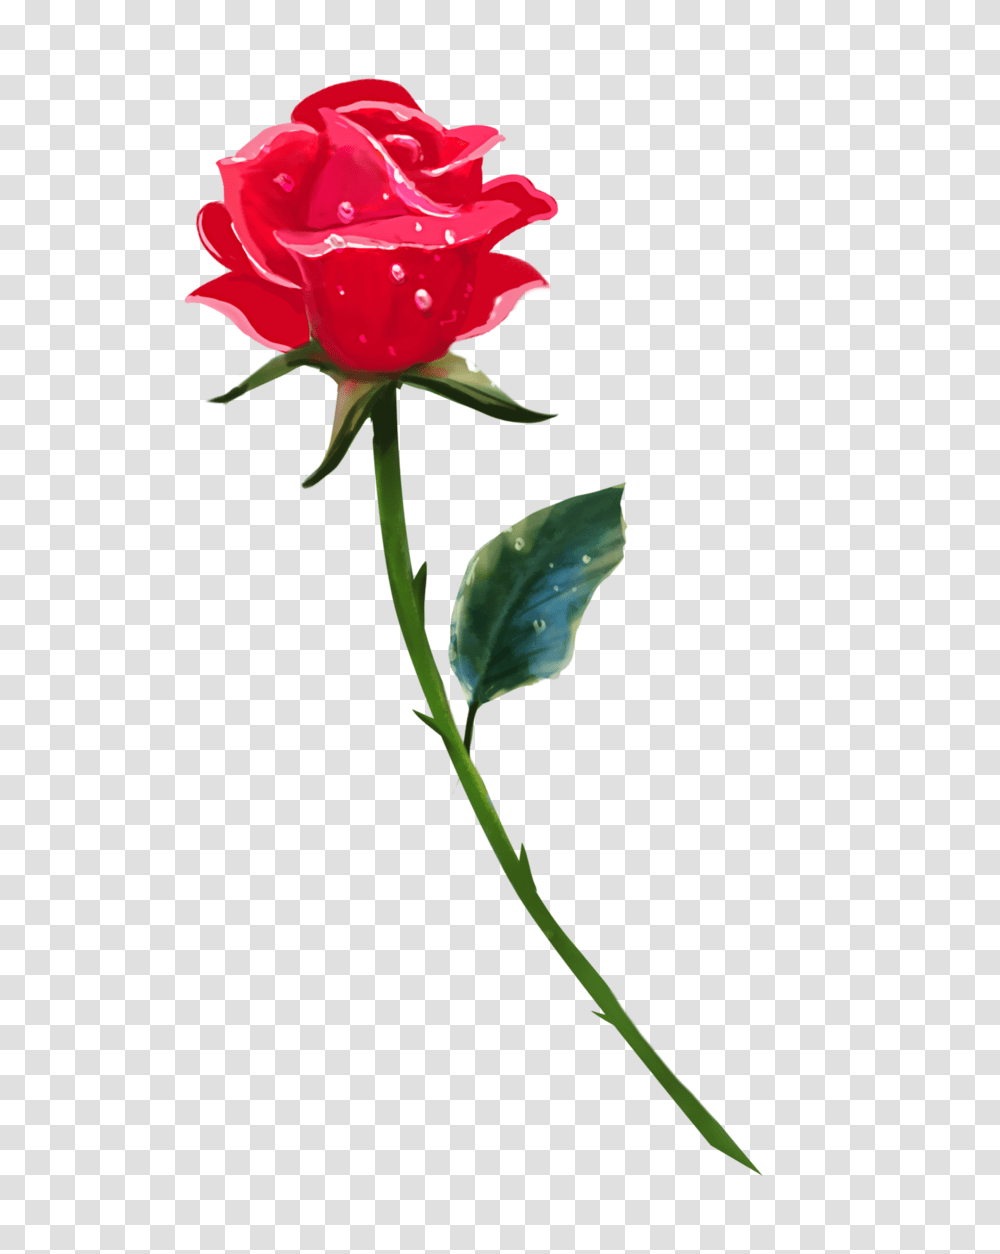 Single Rose Background Image Arts, Plant, Flower, Blossom, Carnation Transparent Png